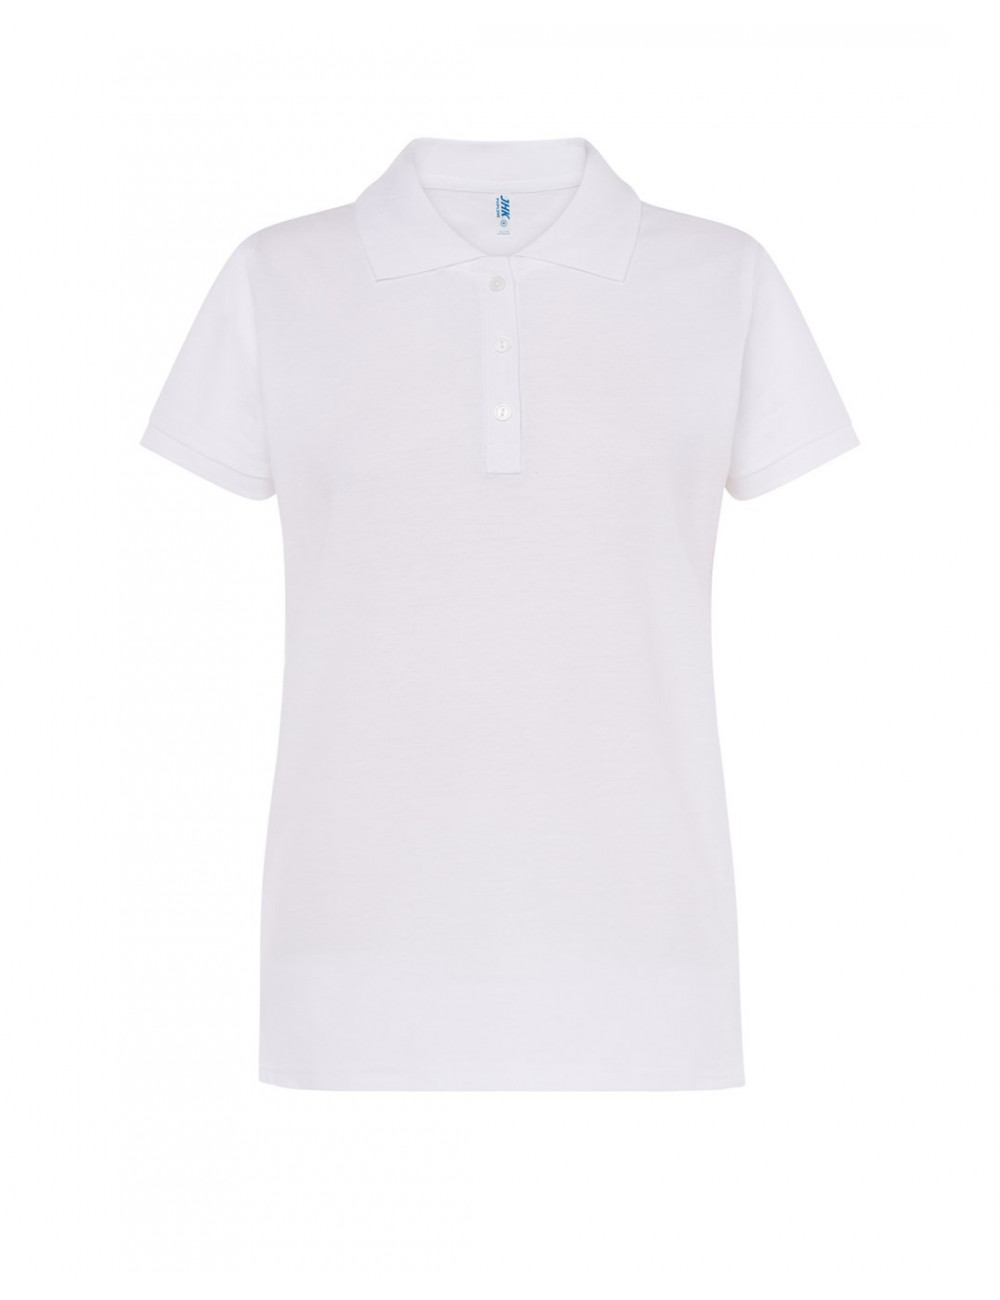 Women`s polo shirts popl 200 wh white Jhk